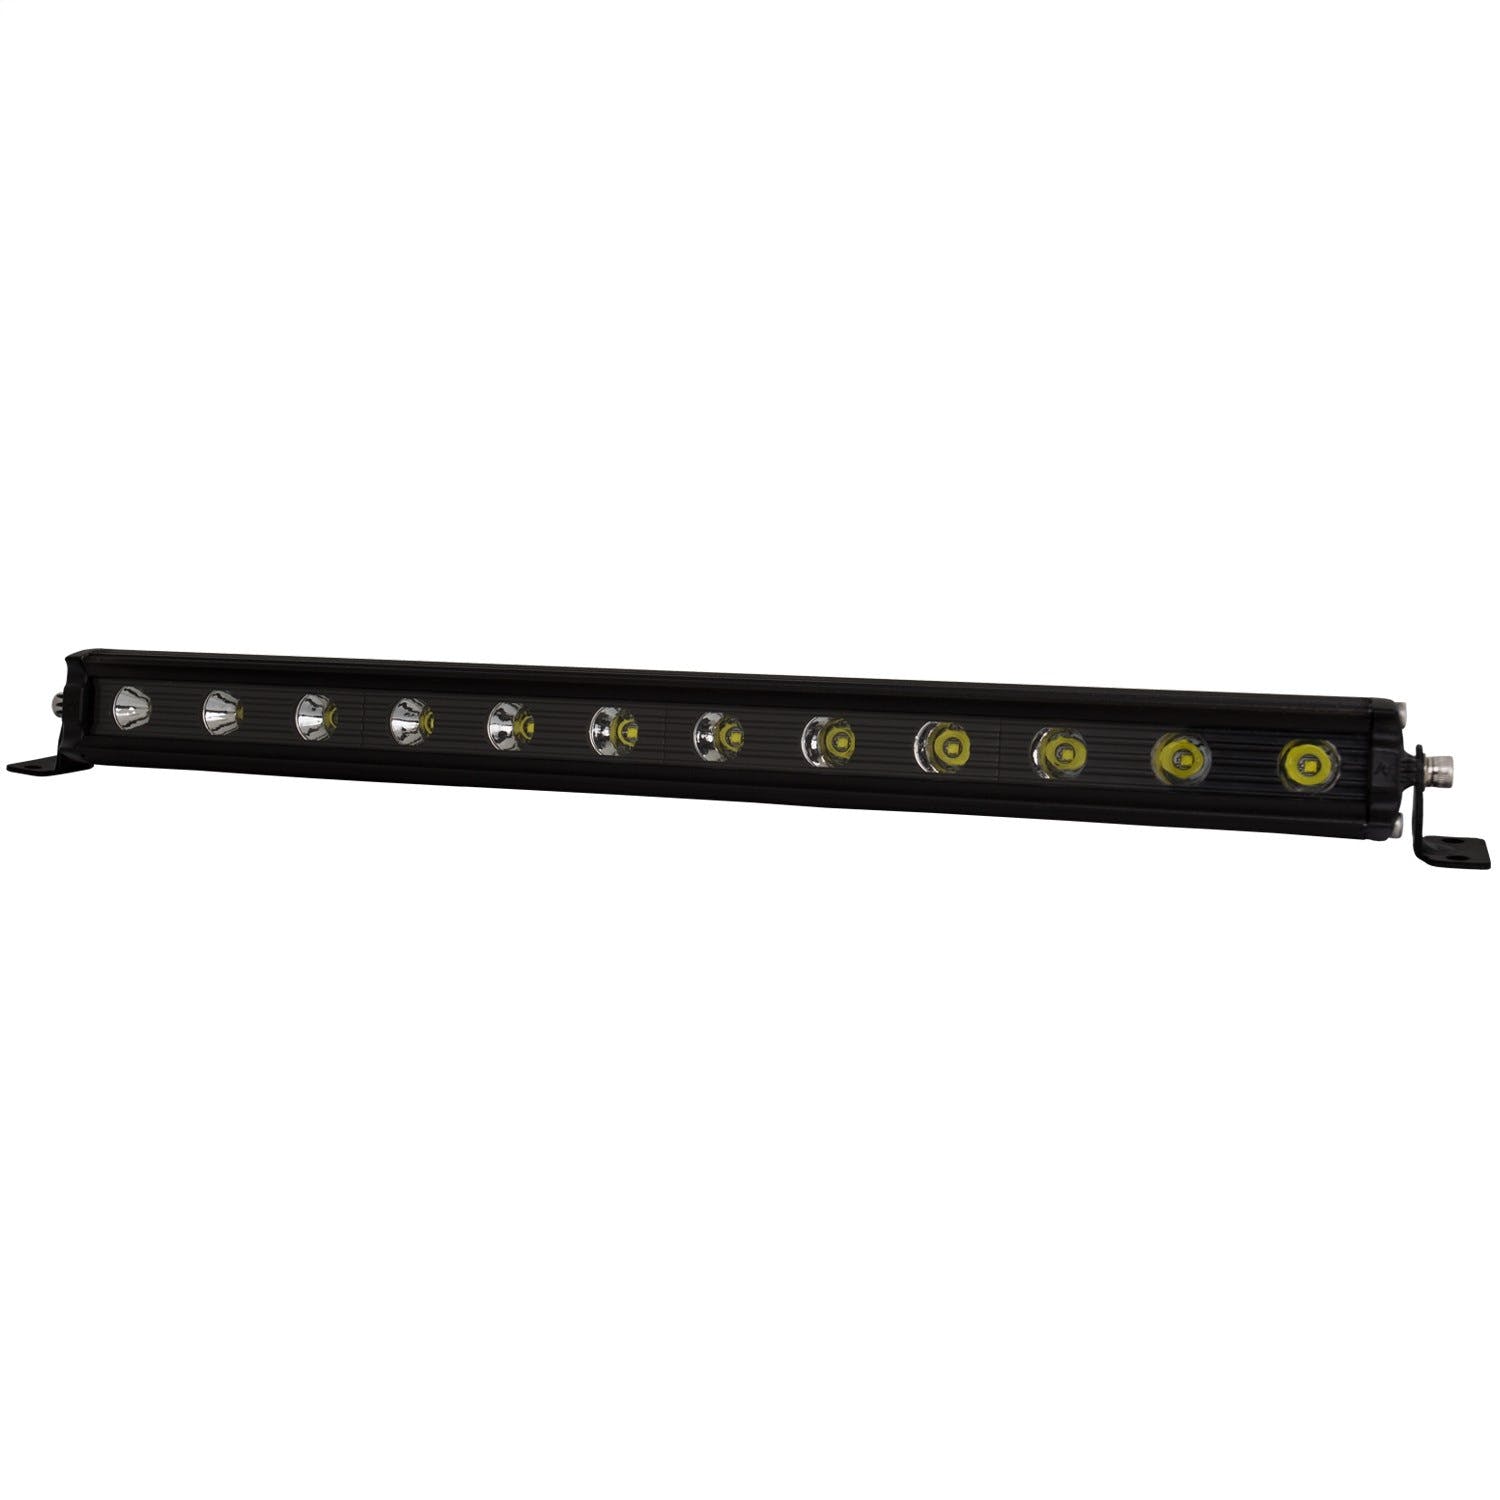 AnzoUSA 861178 12" Slimline LED Light Bar (white)